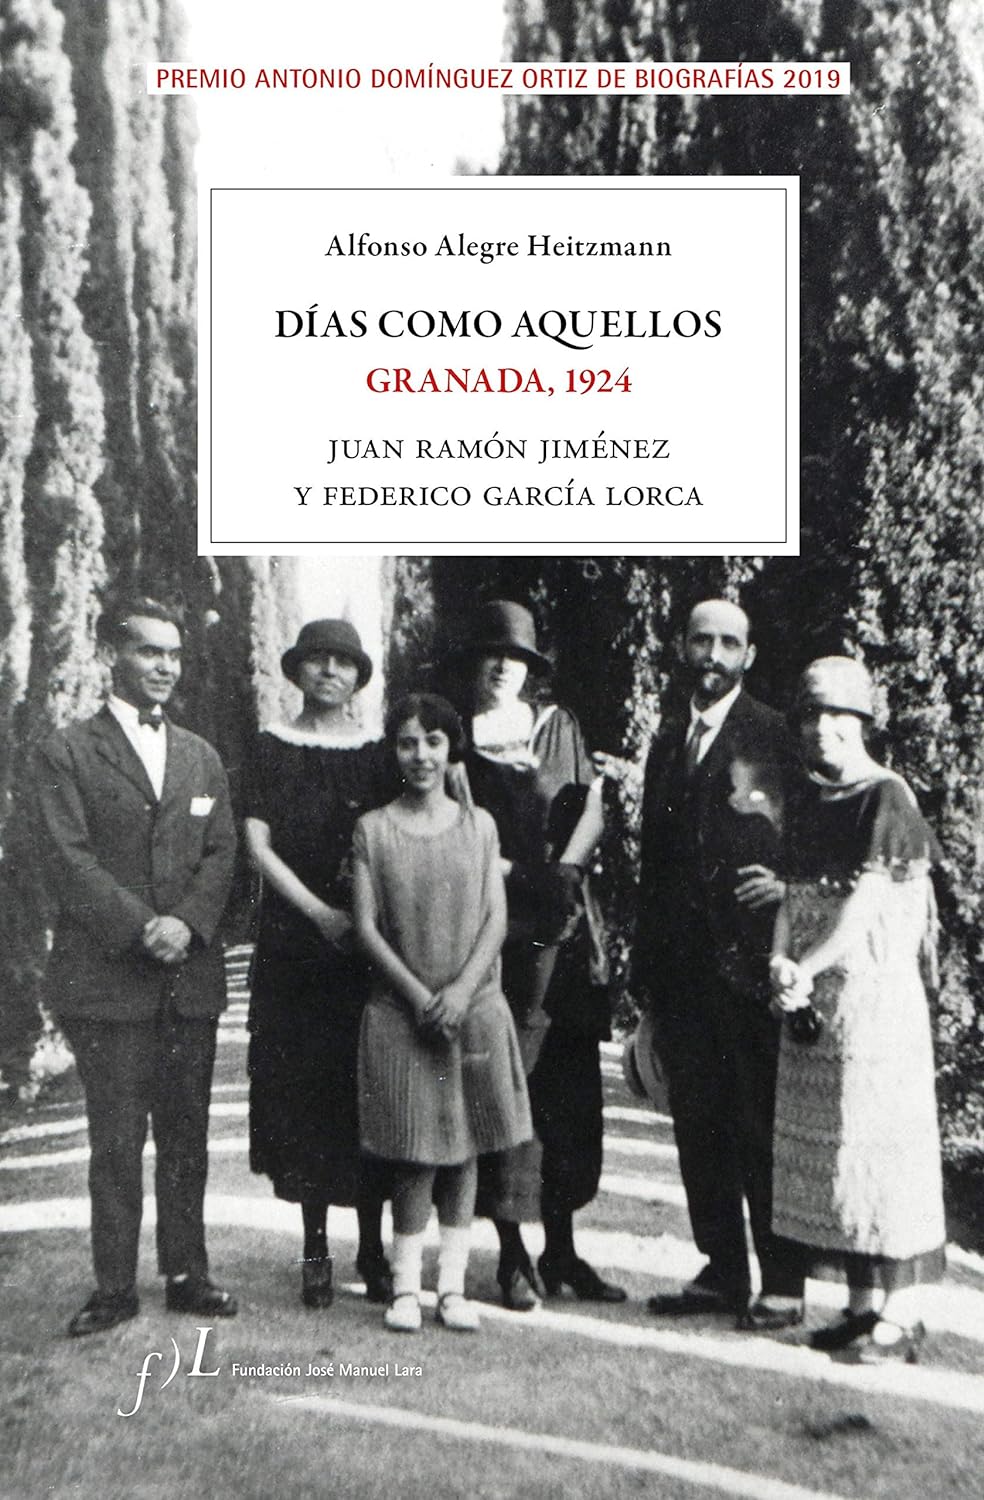 'Días como aquellos. Granada, 1924', de Alfonso Alegre Heitzmann